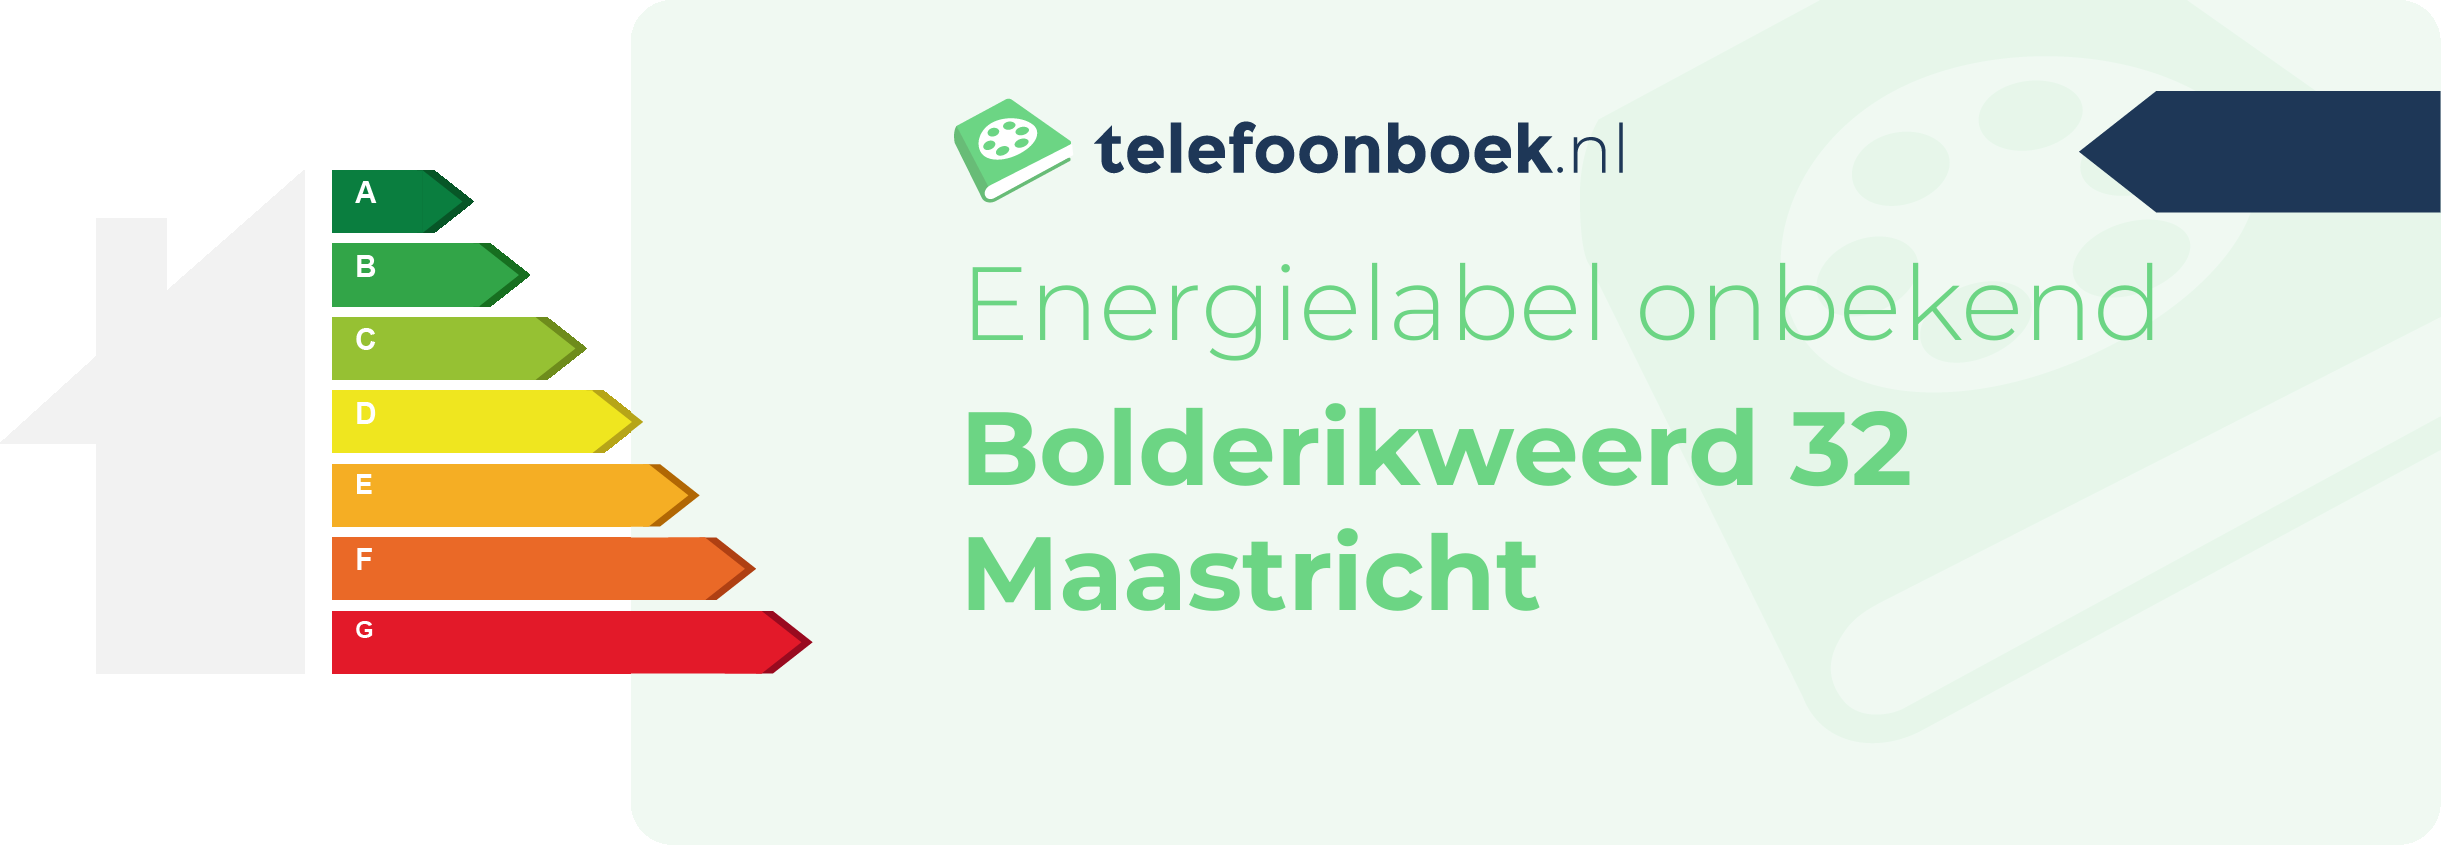 Energielabel Bolderikweerd 32 Maastricht